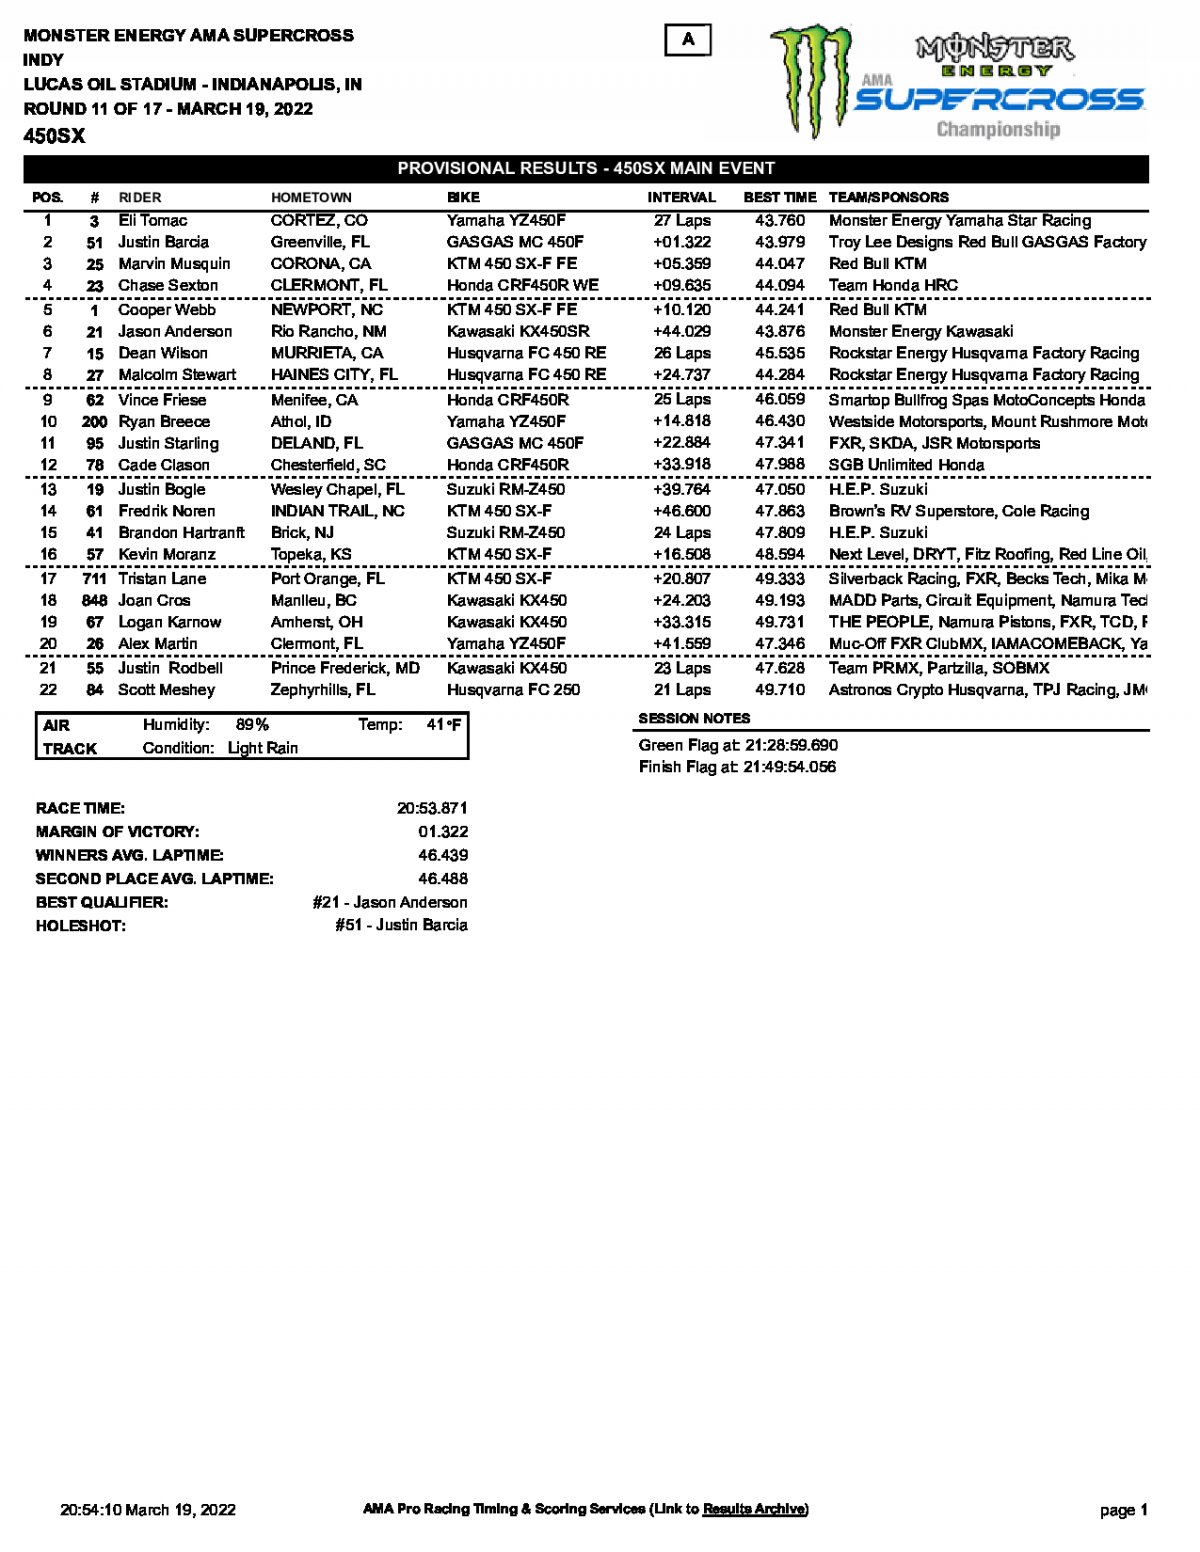 Результаты 11 этапа AMA Supercross, 450SX, Indianapolis